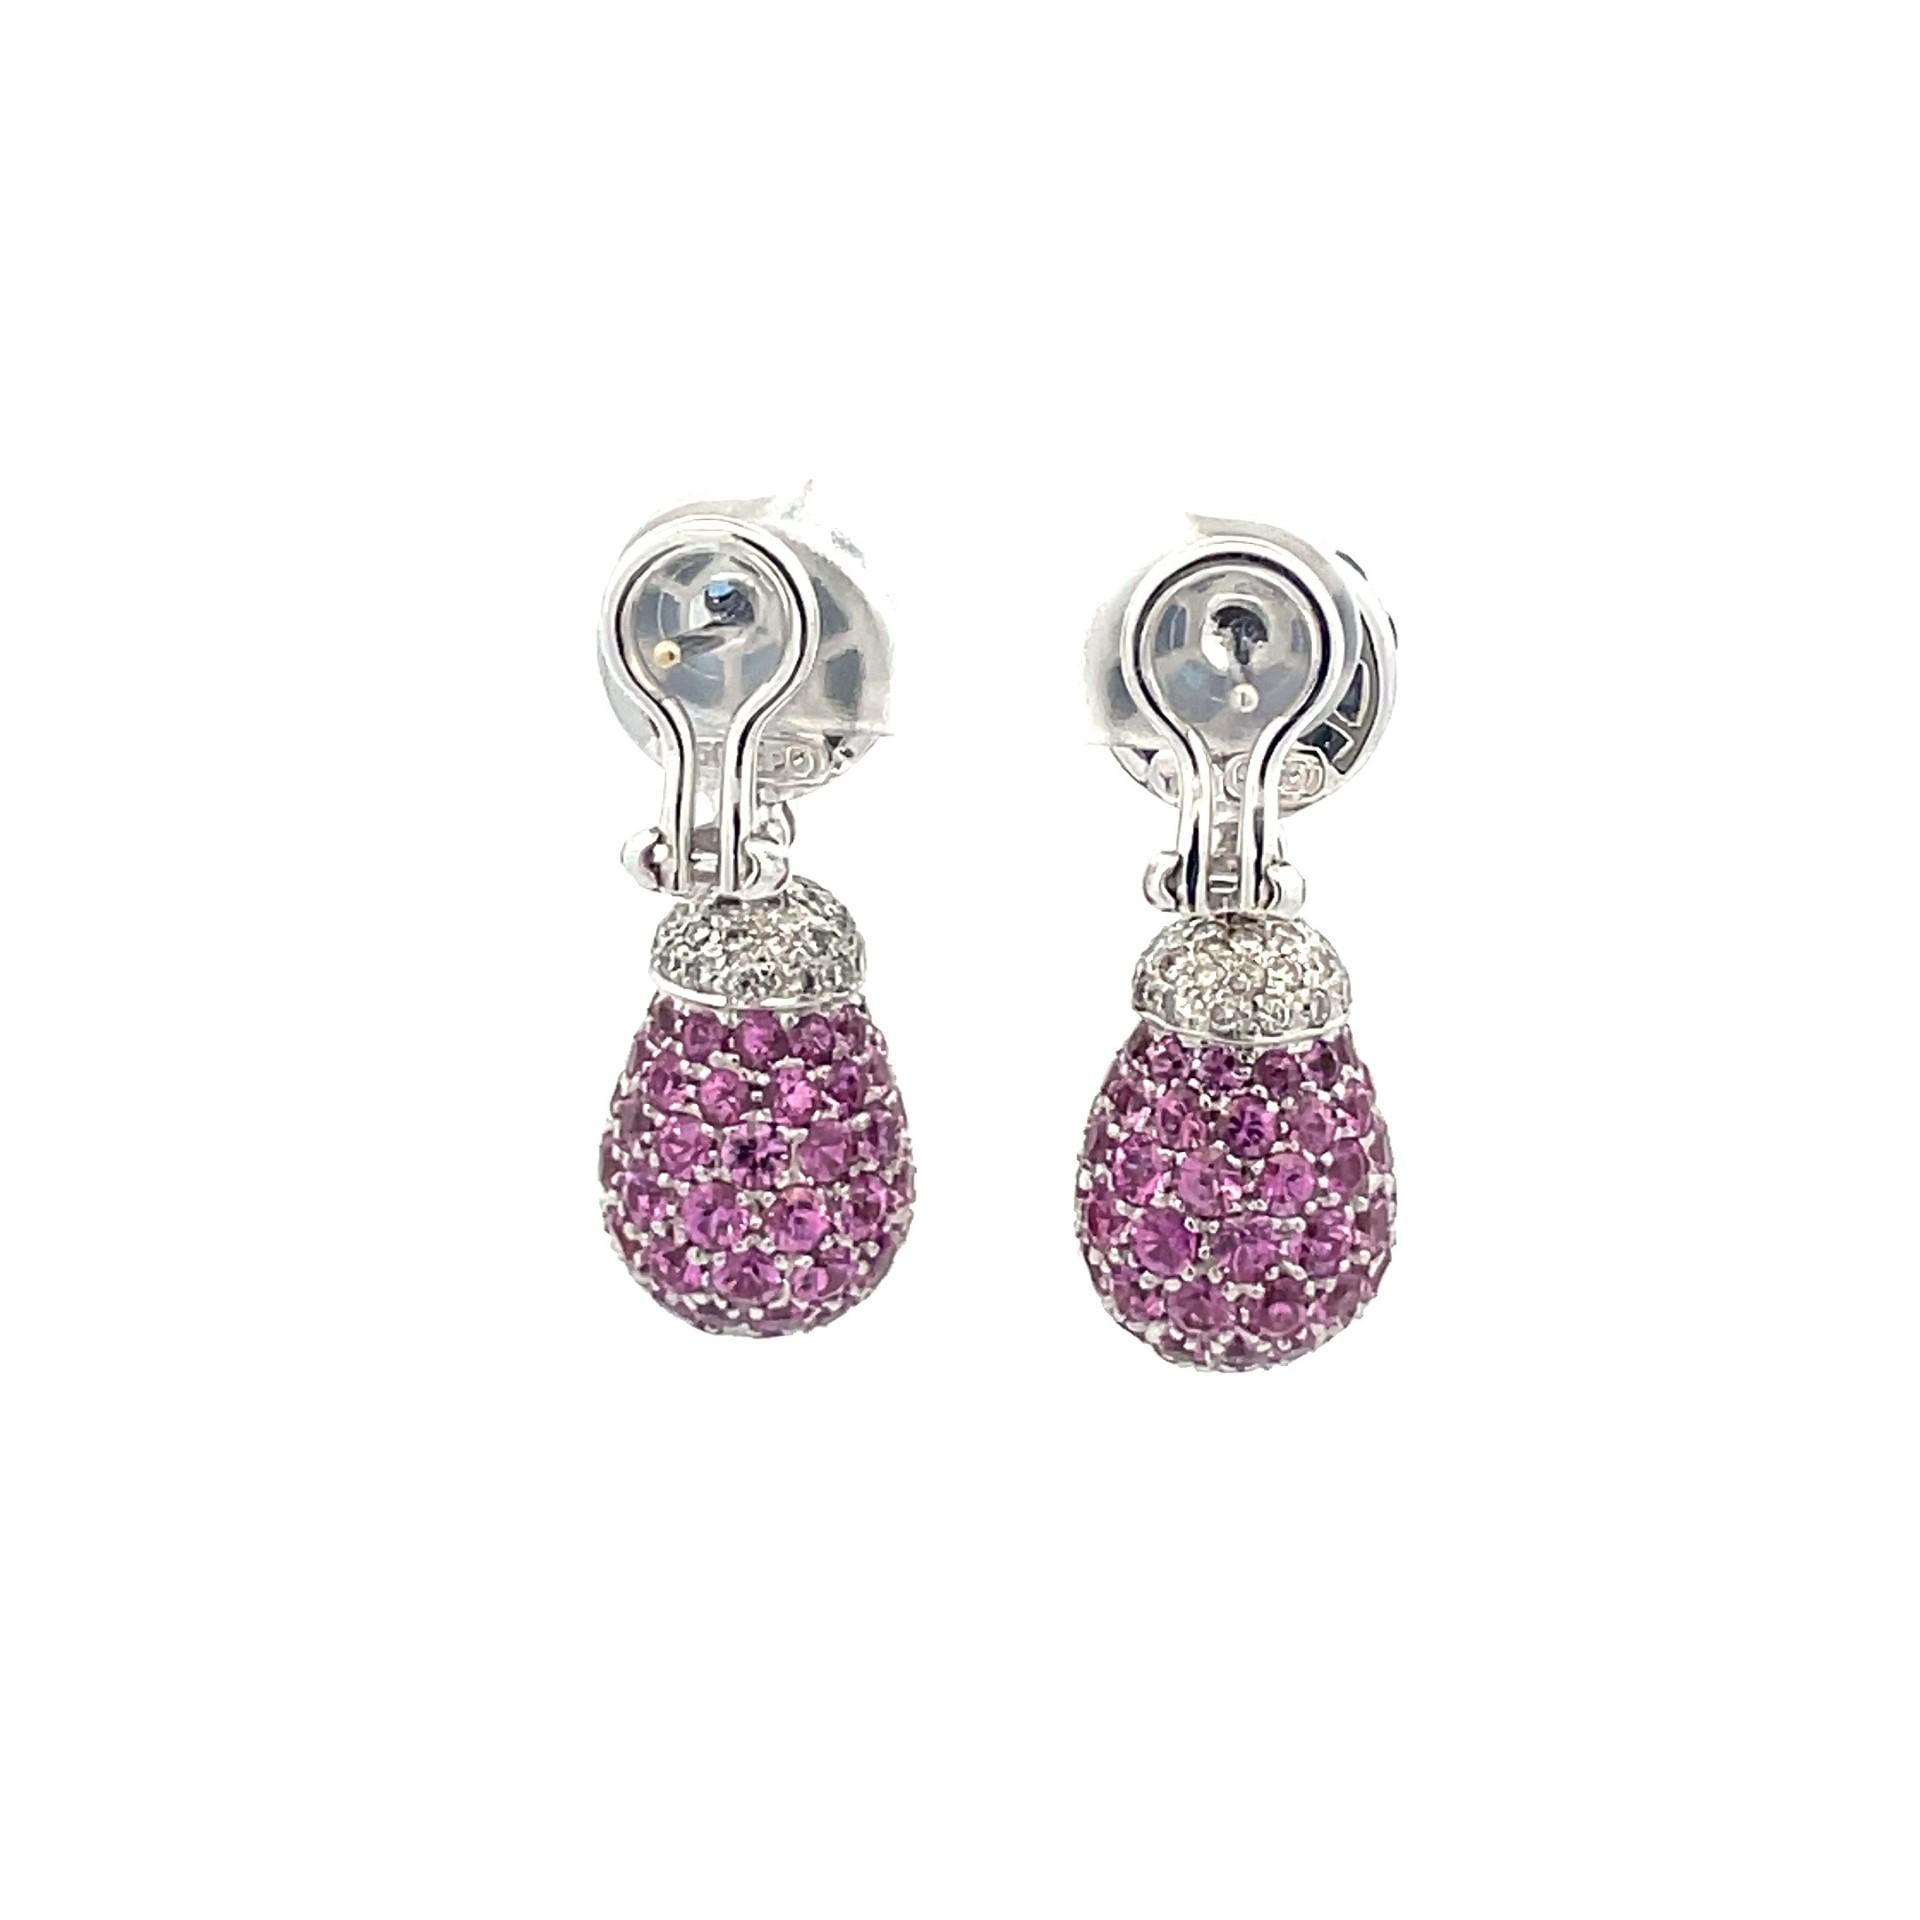  Pink & Blue Sapphire & Diamond Teardrop  Earrings in 18 Kt White Gold  For Sale 1